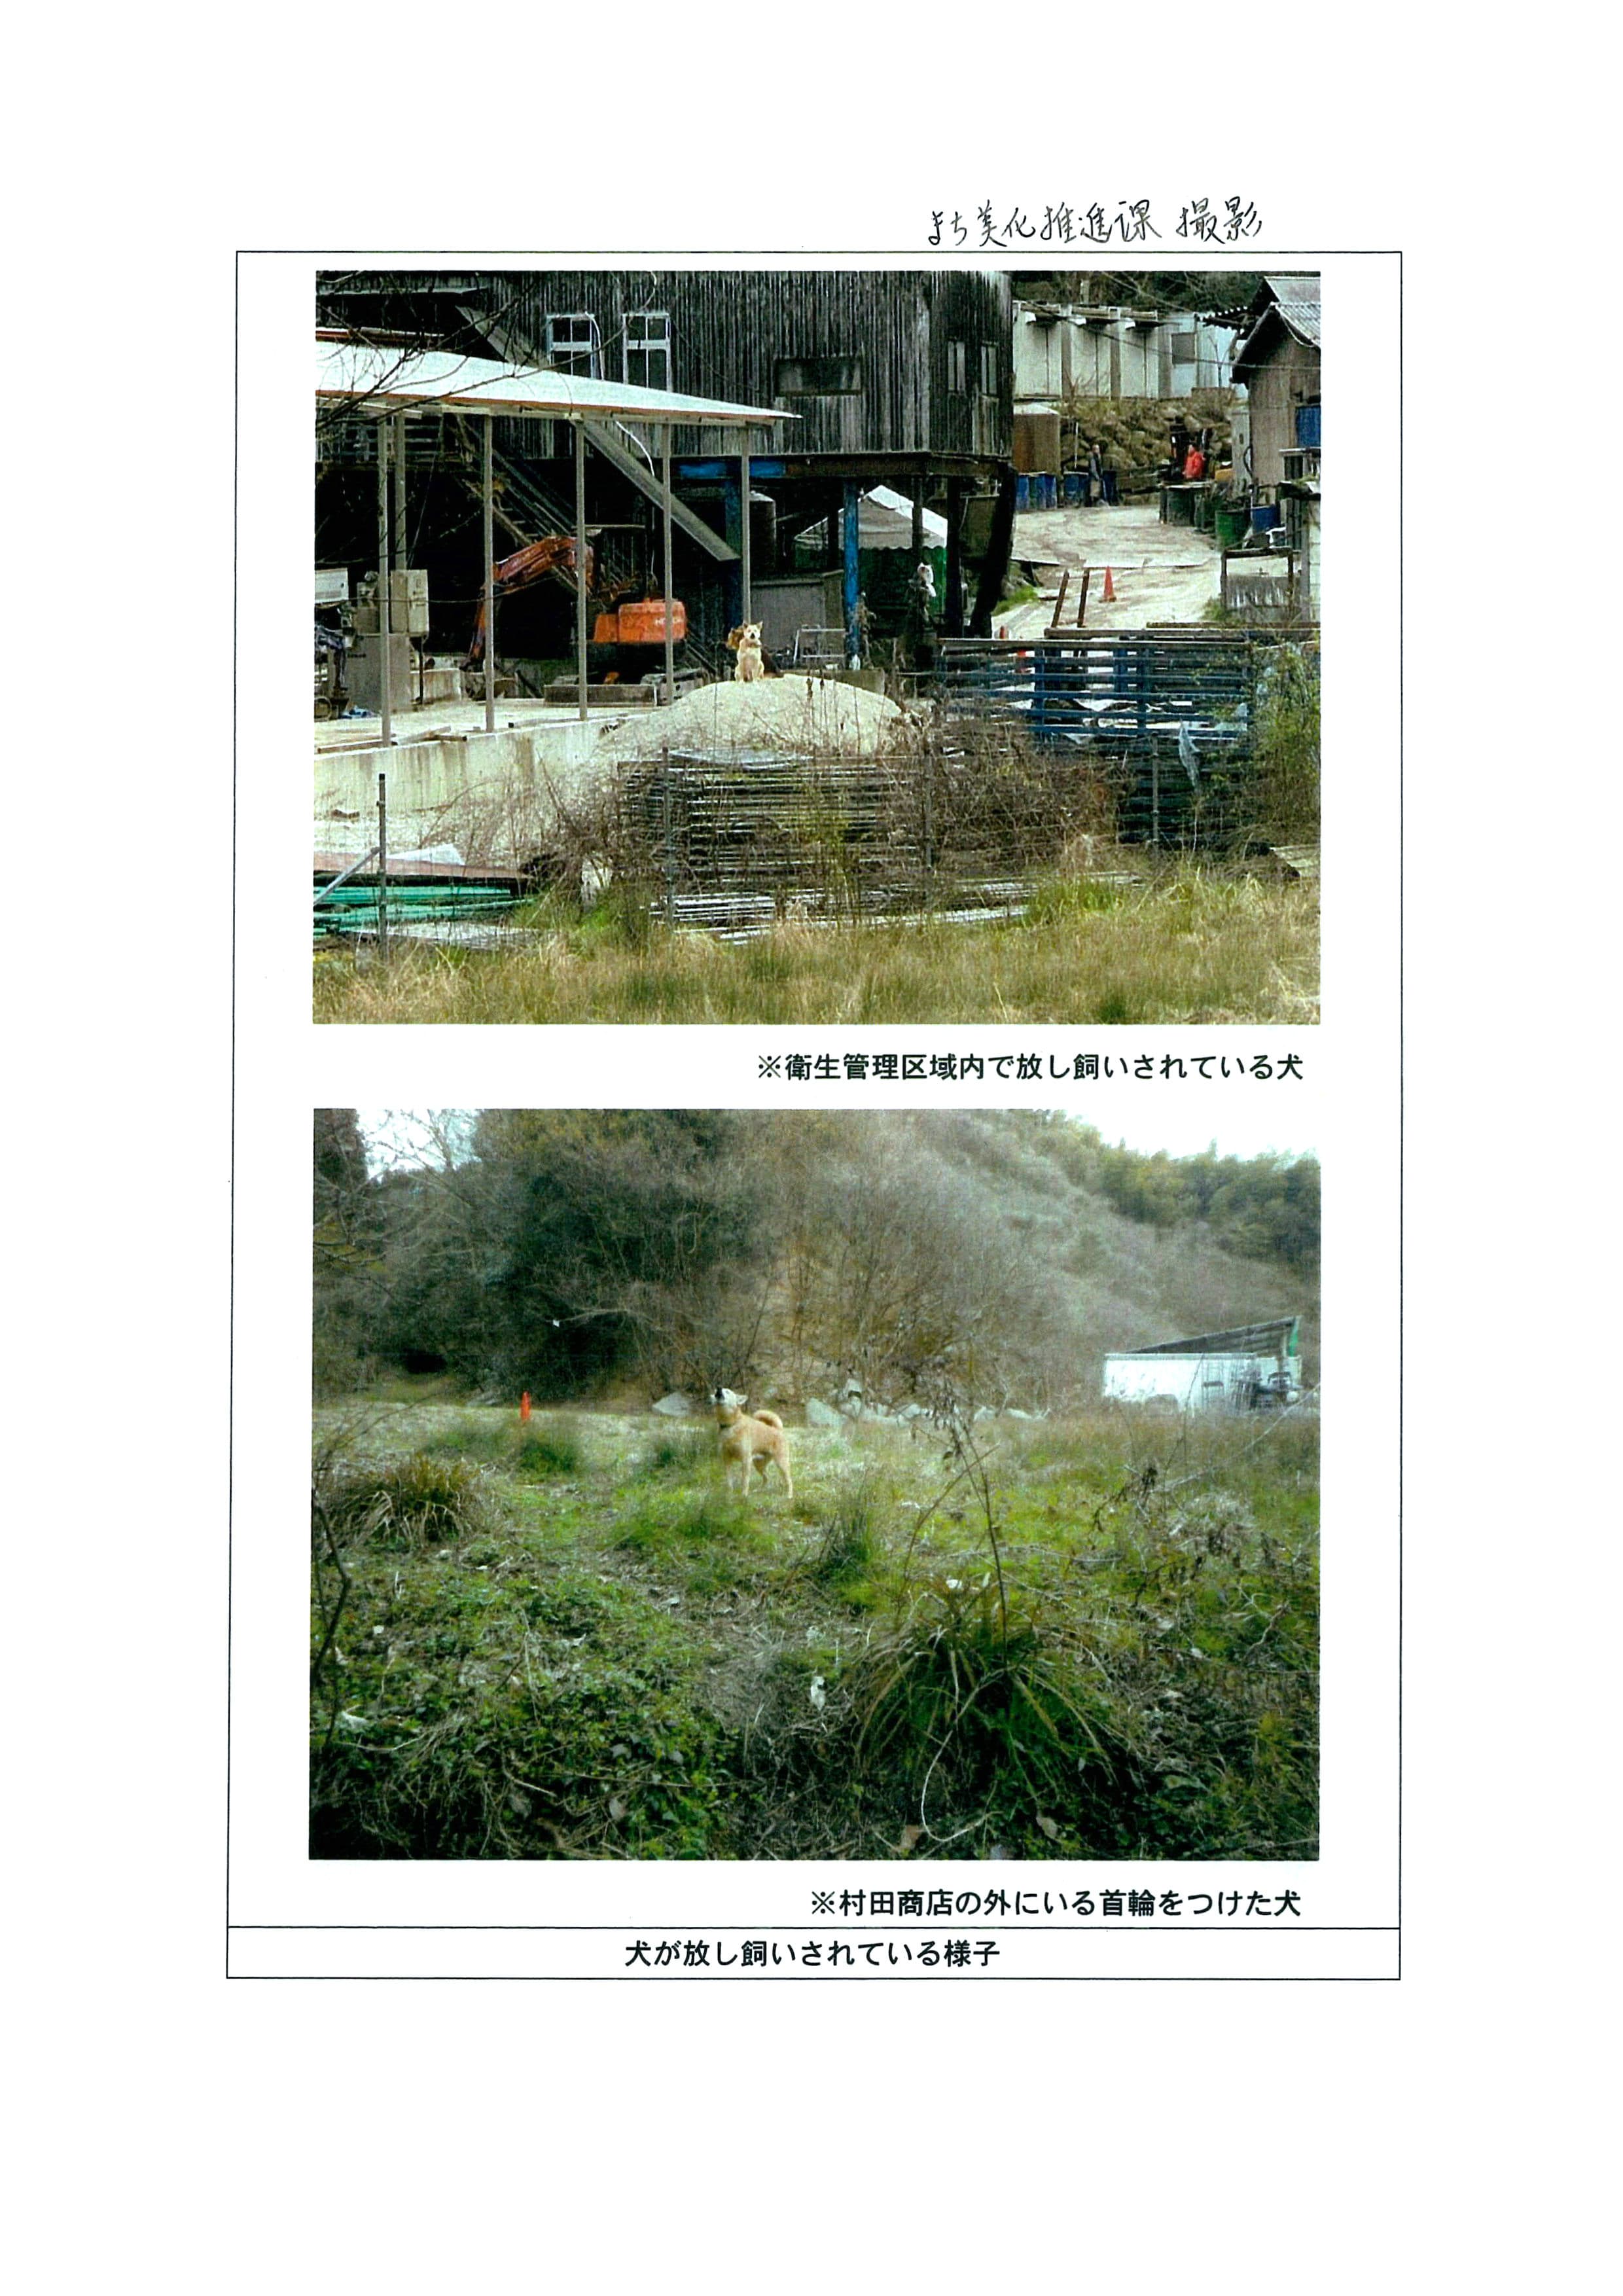 令和6(2024)年3月11日-(株)村田商店による市道の占用状況の現地確認(再調査)-05